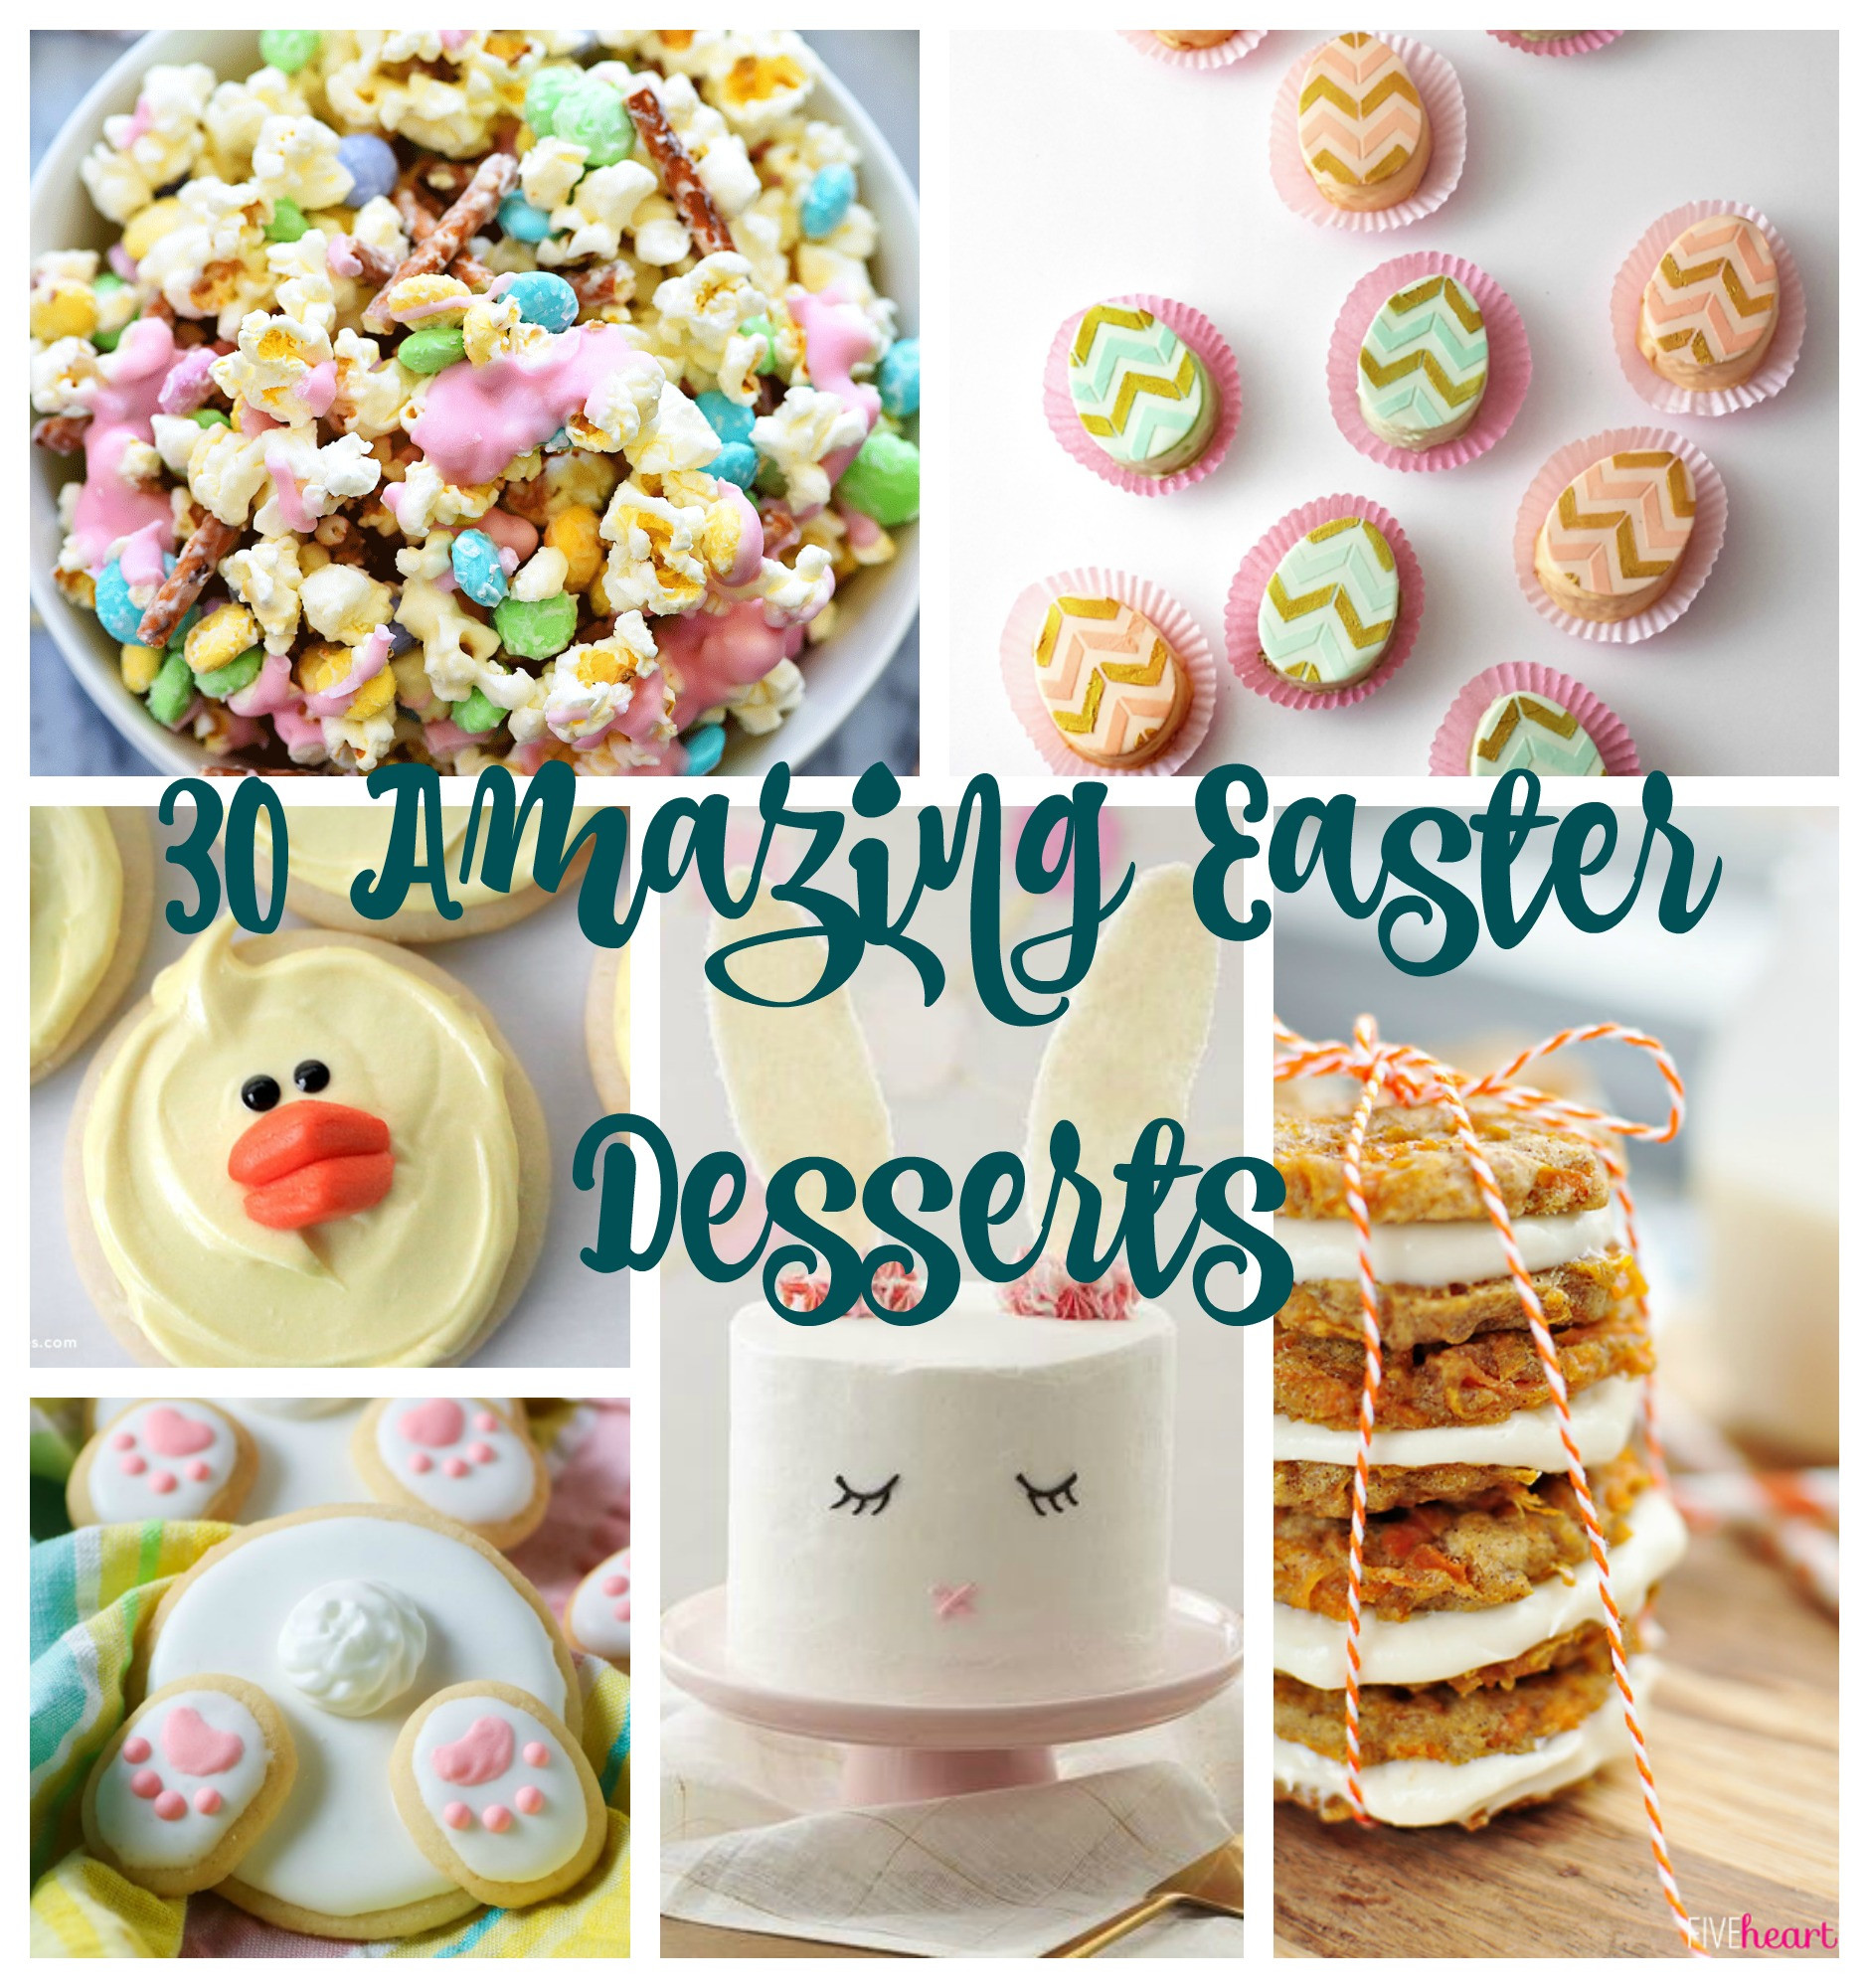 Easter Desserts Pinterest
 30 Amazing Easter Desserts I Dig Pinterest